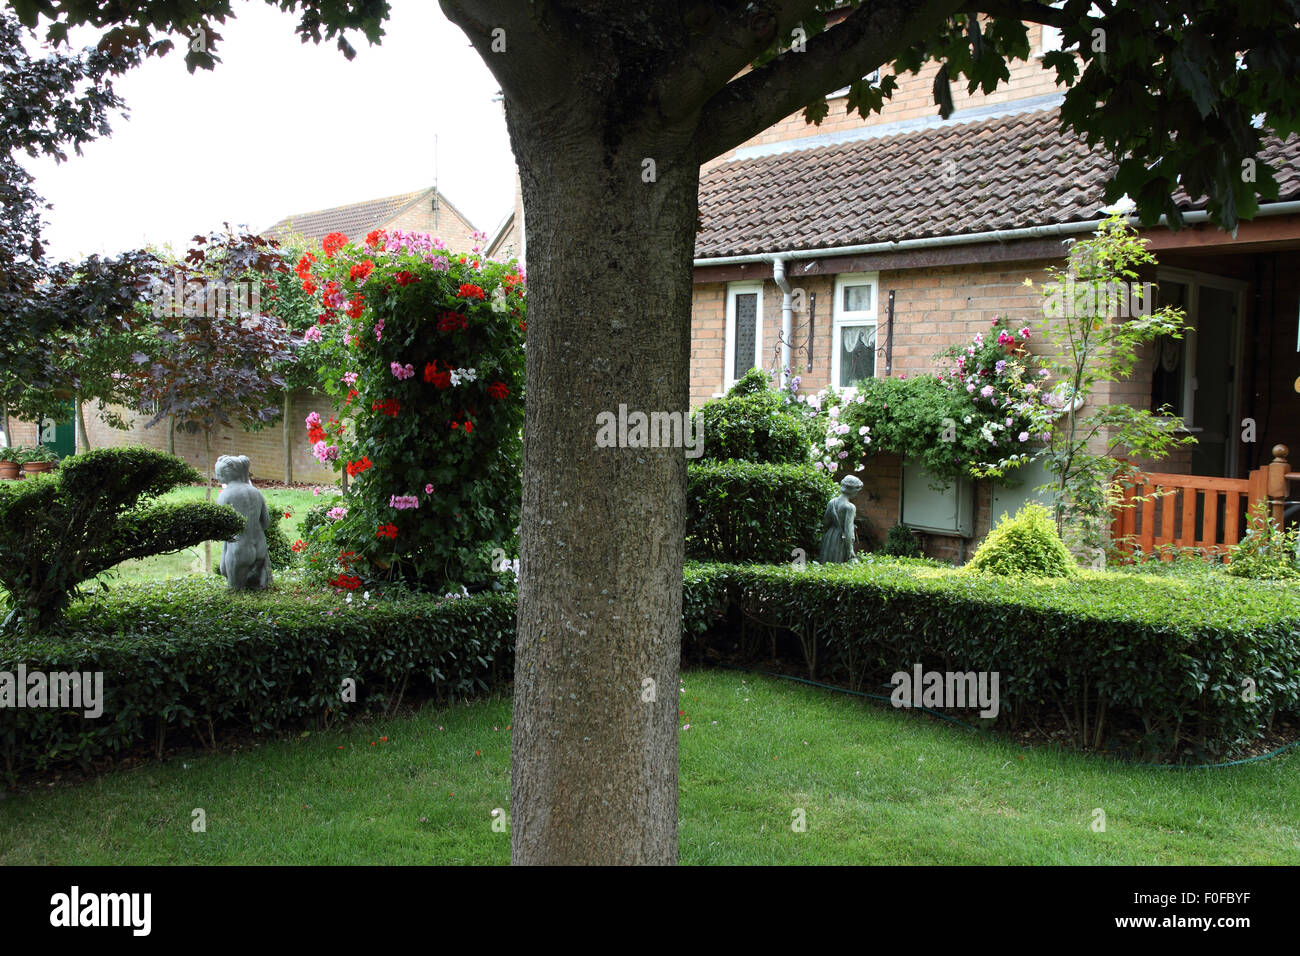 Neat jardín delantero con coberturas topiary Foto de stock